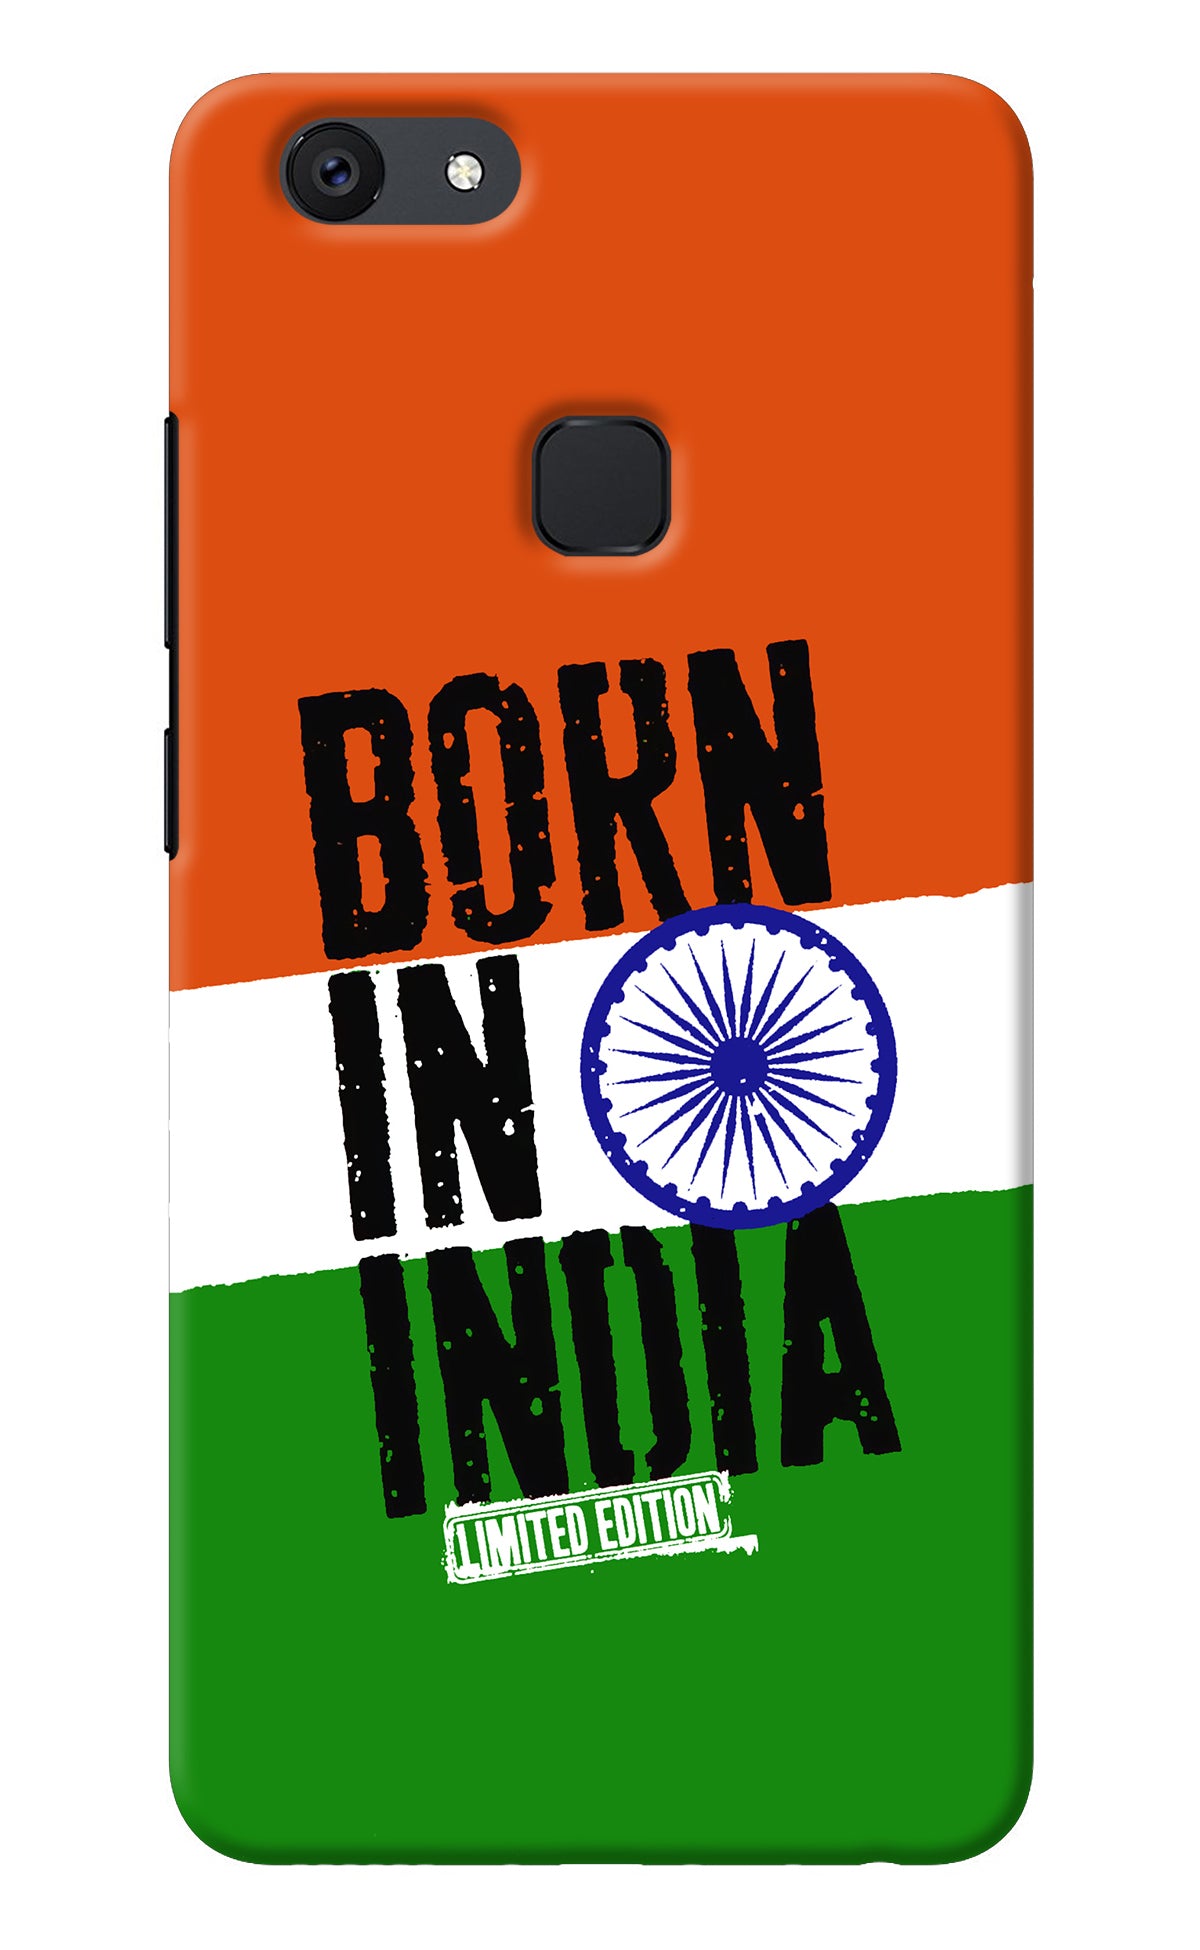 Born in India Vivo V7 Back Cover